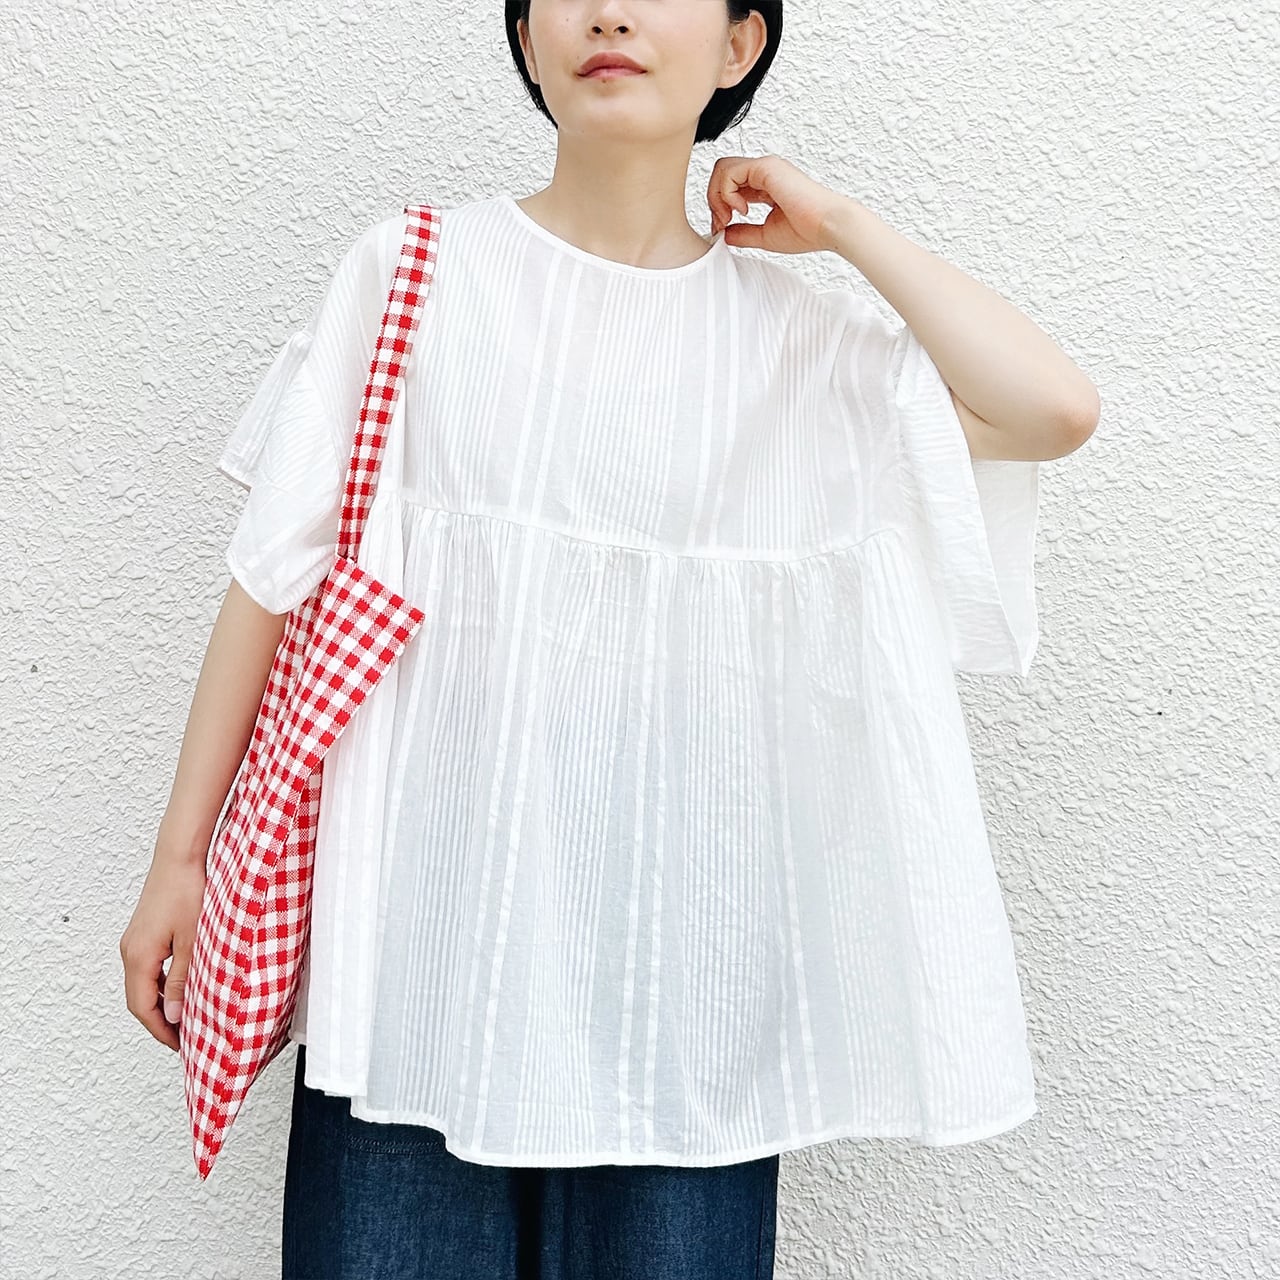 Cotton dobby gather blouse (white)
